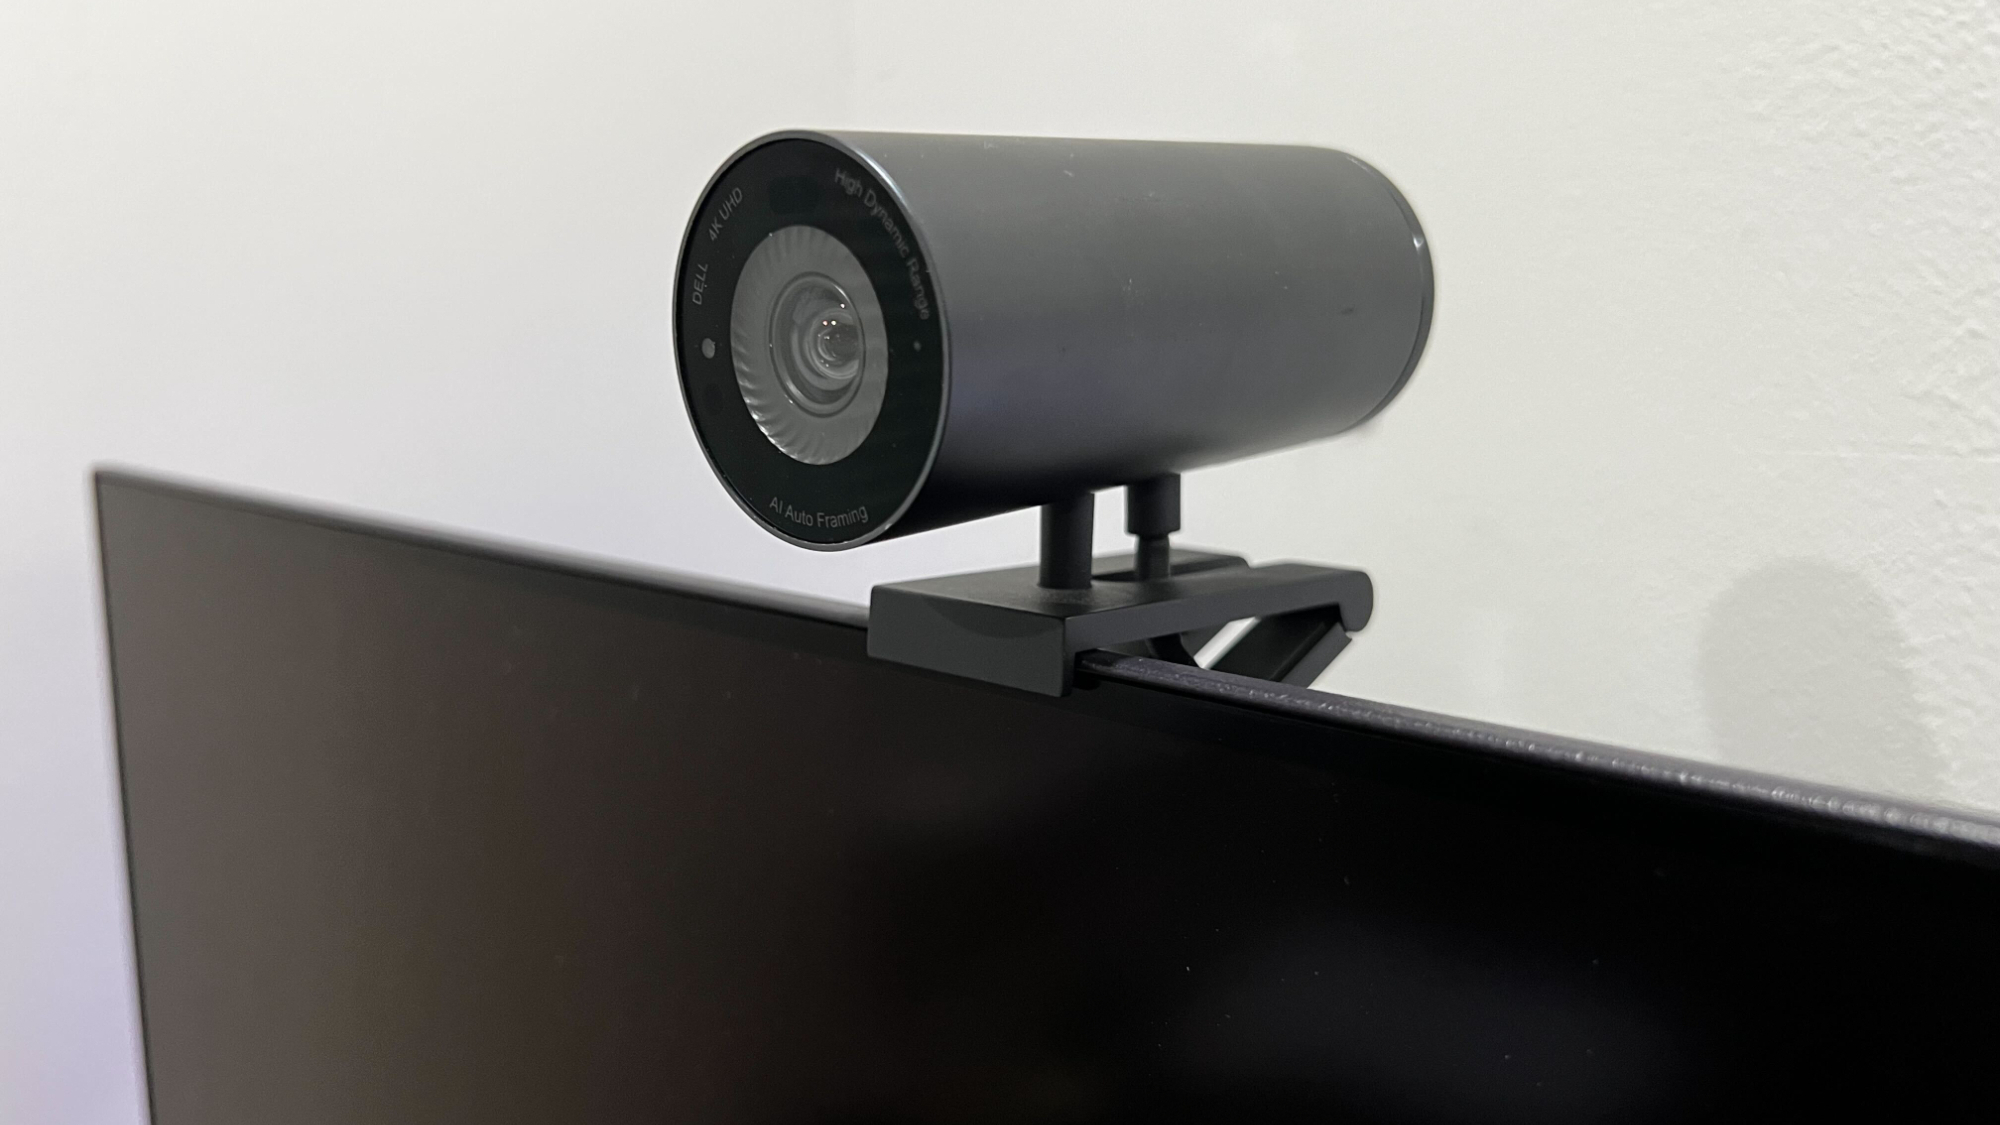 Dell UltraSharp WB7022 4K webcam review | PC Gamer